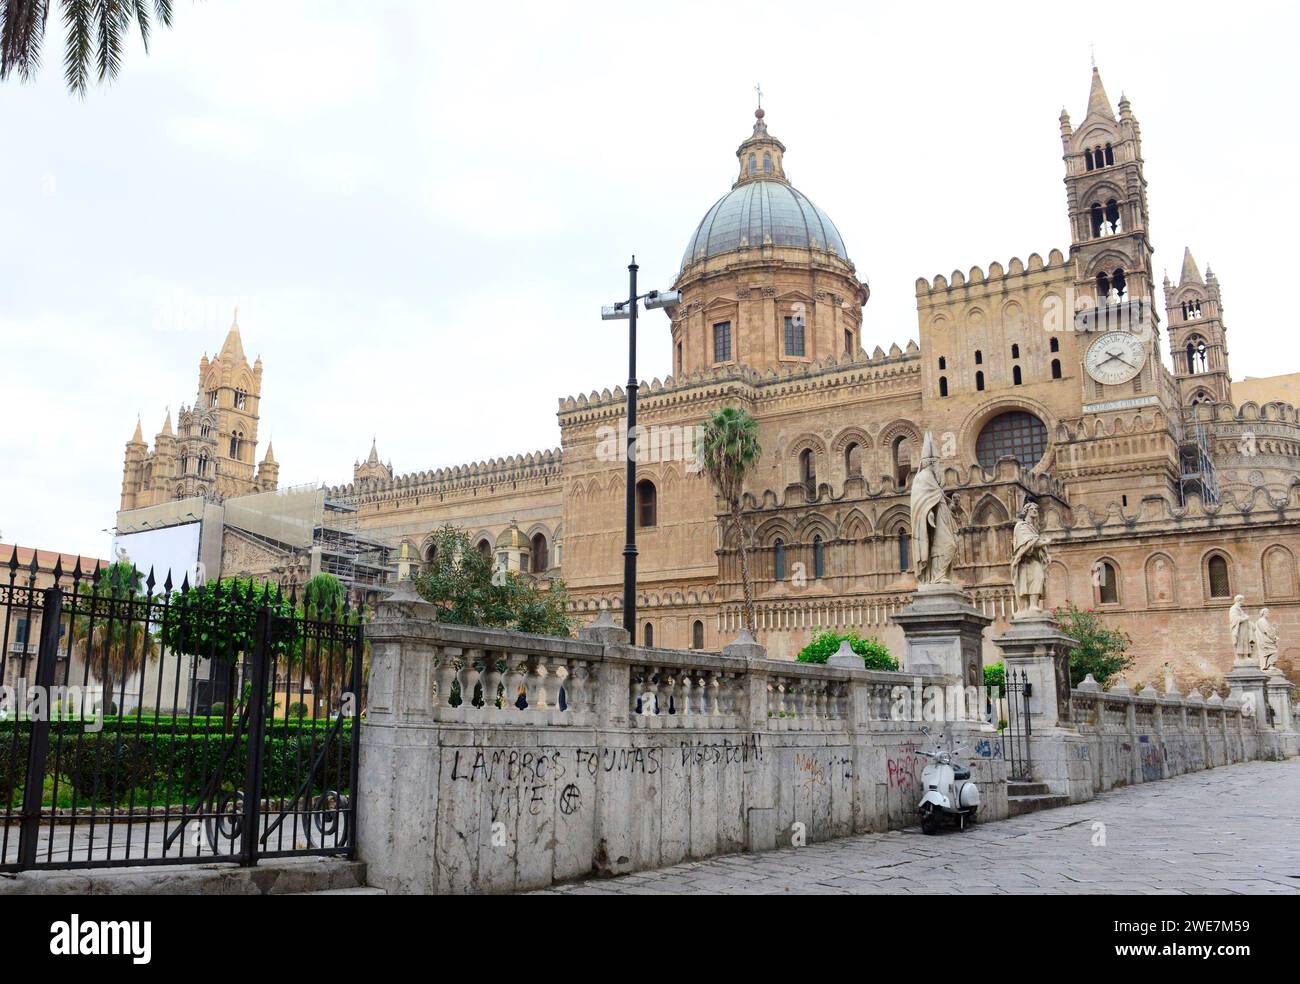 La Cattedrale di Palermo è stato costruito nella struttura normanna nel 1179. Il campanile medievale in architettura Gotica stile . Foto Stock